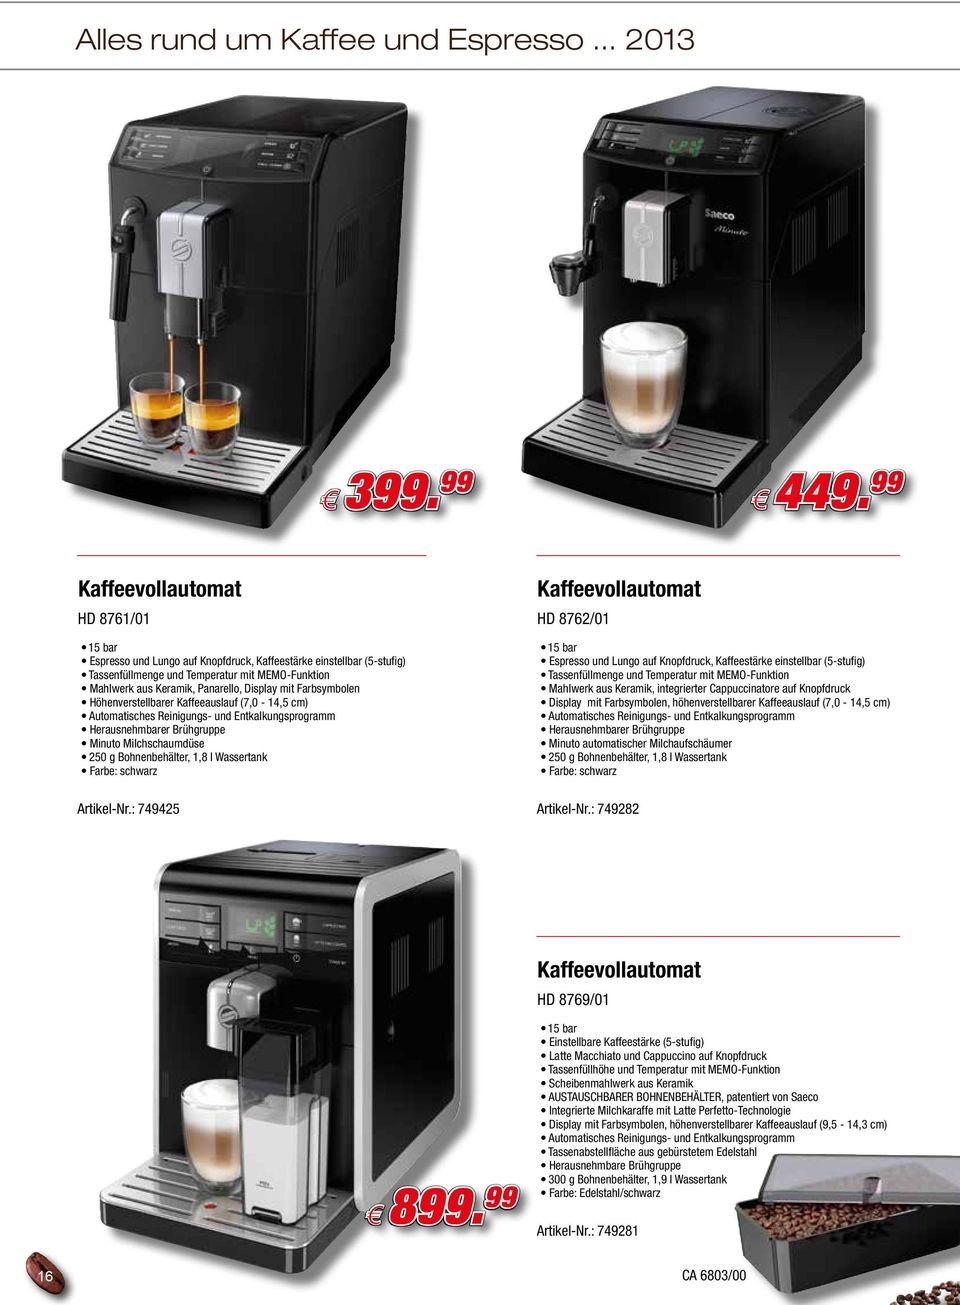 mit Farbsymbolen Höhenverstellbarer Kaffeeauslauf (7,0-14,5 cm) Automatisches Reinigungs- und Entkalkungsprogramm Herausnehmbarer Brühgruppe Minuto Milchschaumdüse 250 g Bohnenbehälter, 1,8 l